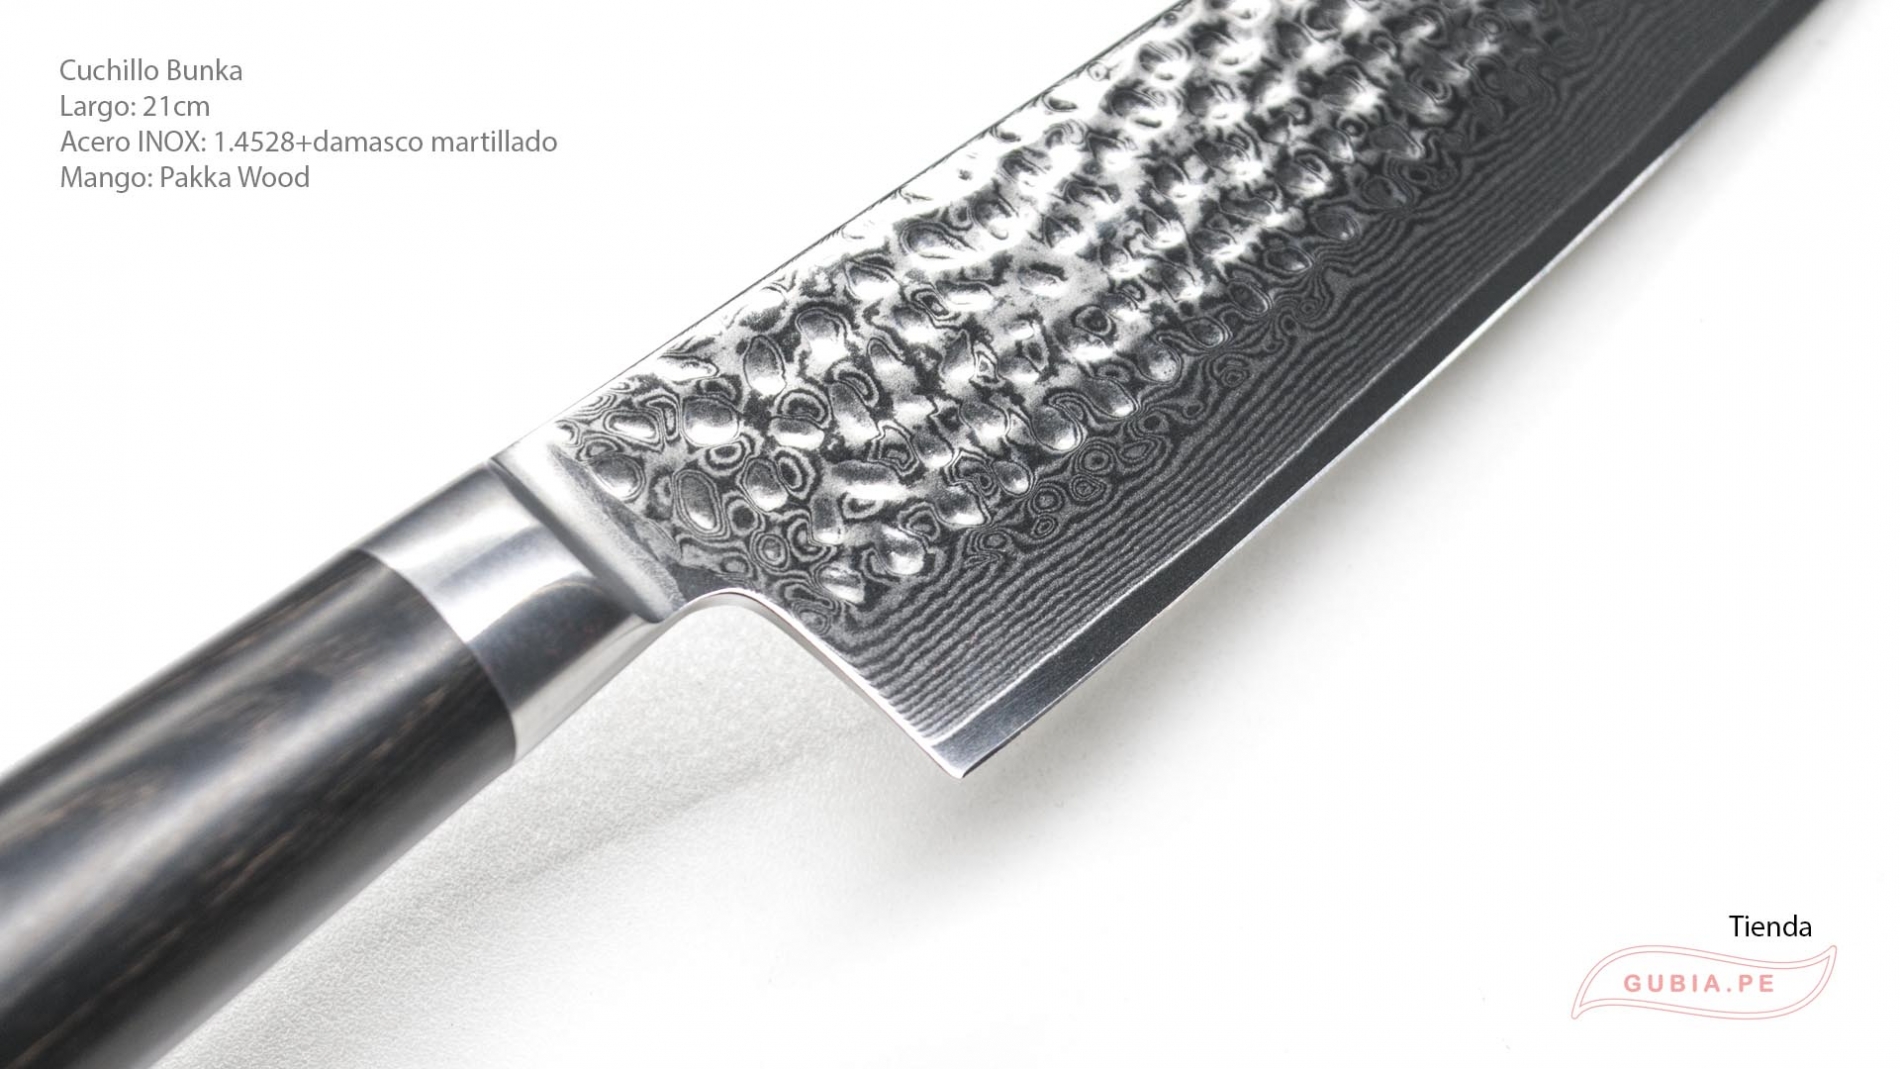 Cuchillo Gyuto 20cm acero 10Cr+damasco Cafe B1h-CS-21